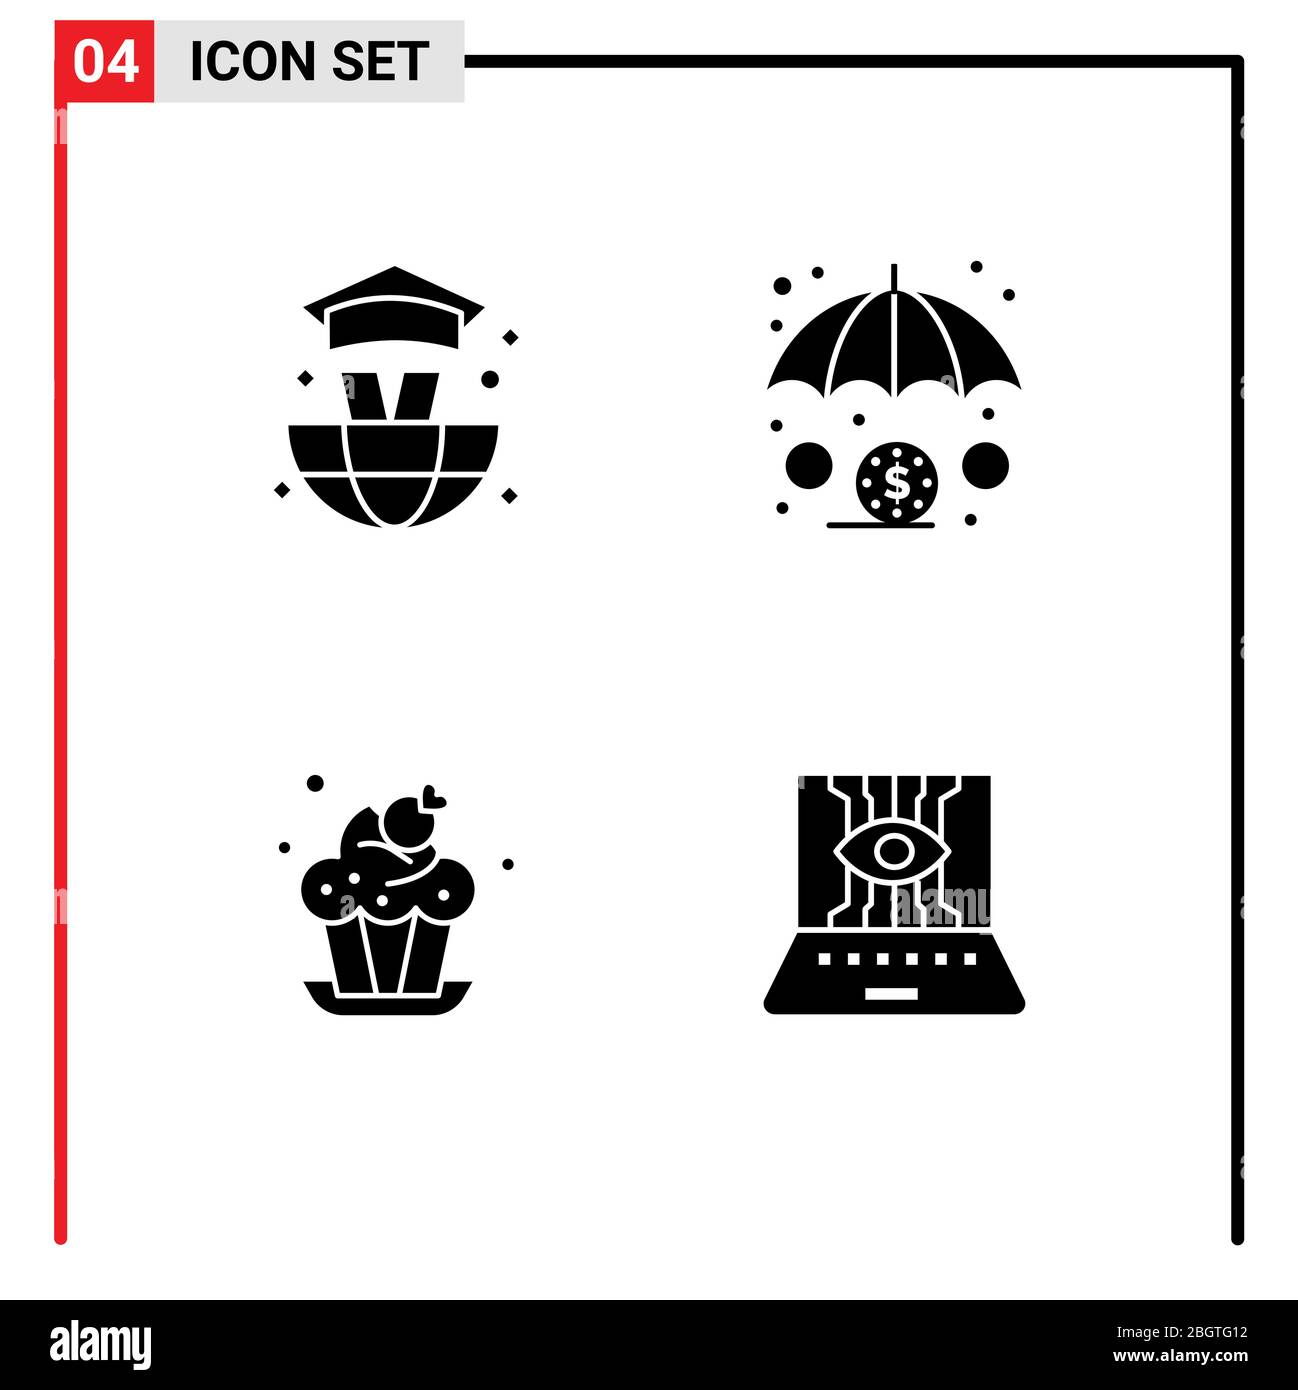 Stock Vector Icon Pack de 4 lignes signes et symboles pour le monde, dessert, finance, boulangerie, informatique Editable Vector Design Elements Illustration de Vecteur